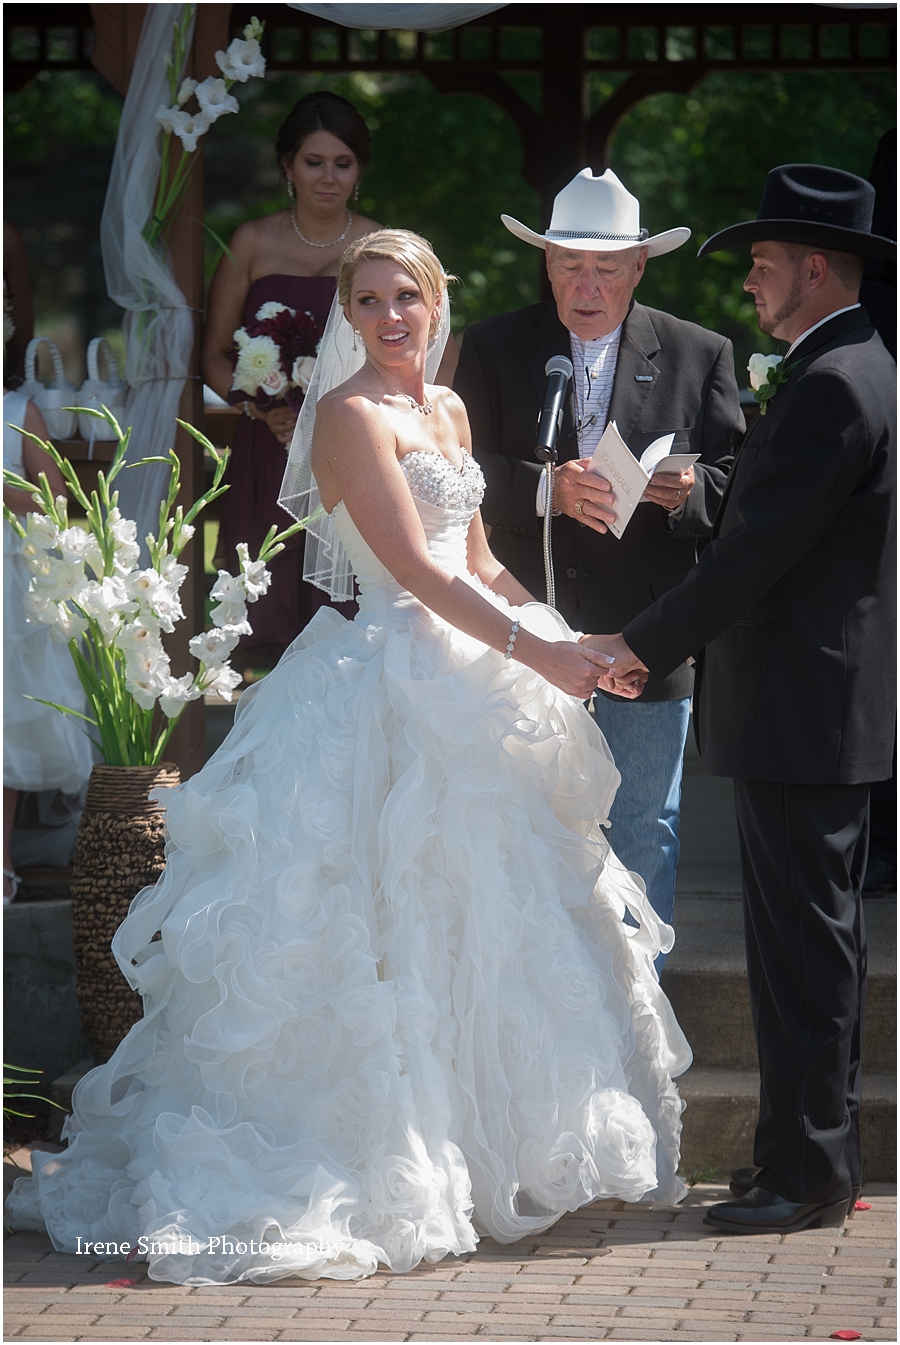 Lake-Latonka-Pennsylvania-Wedding-Irene-Smith-Photography_0017.jpg